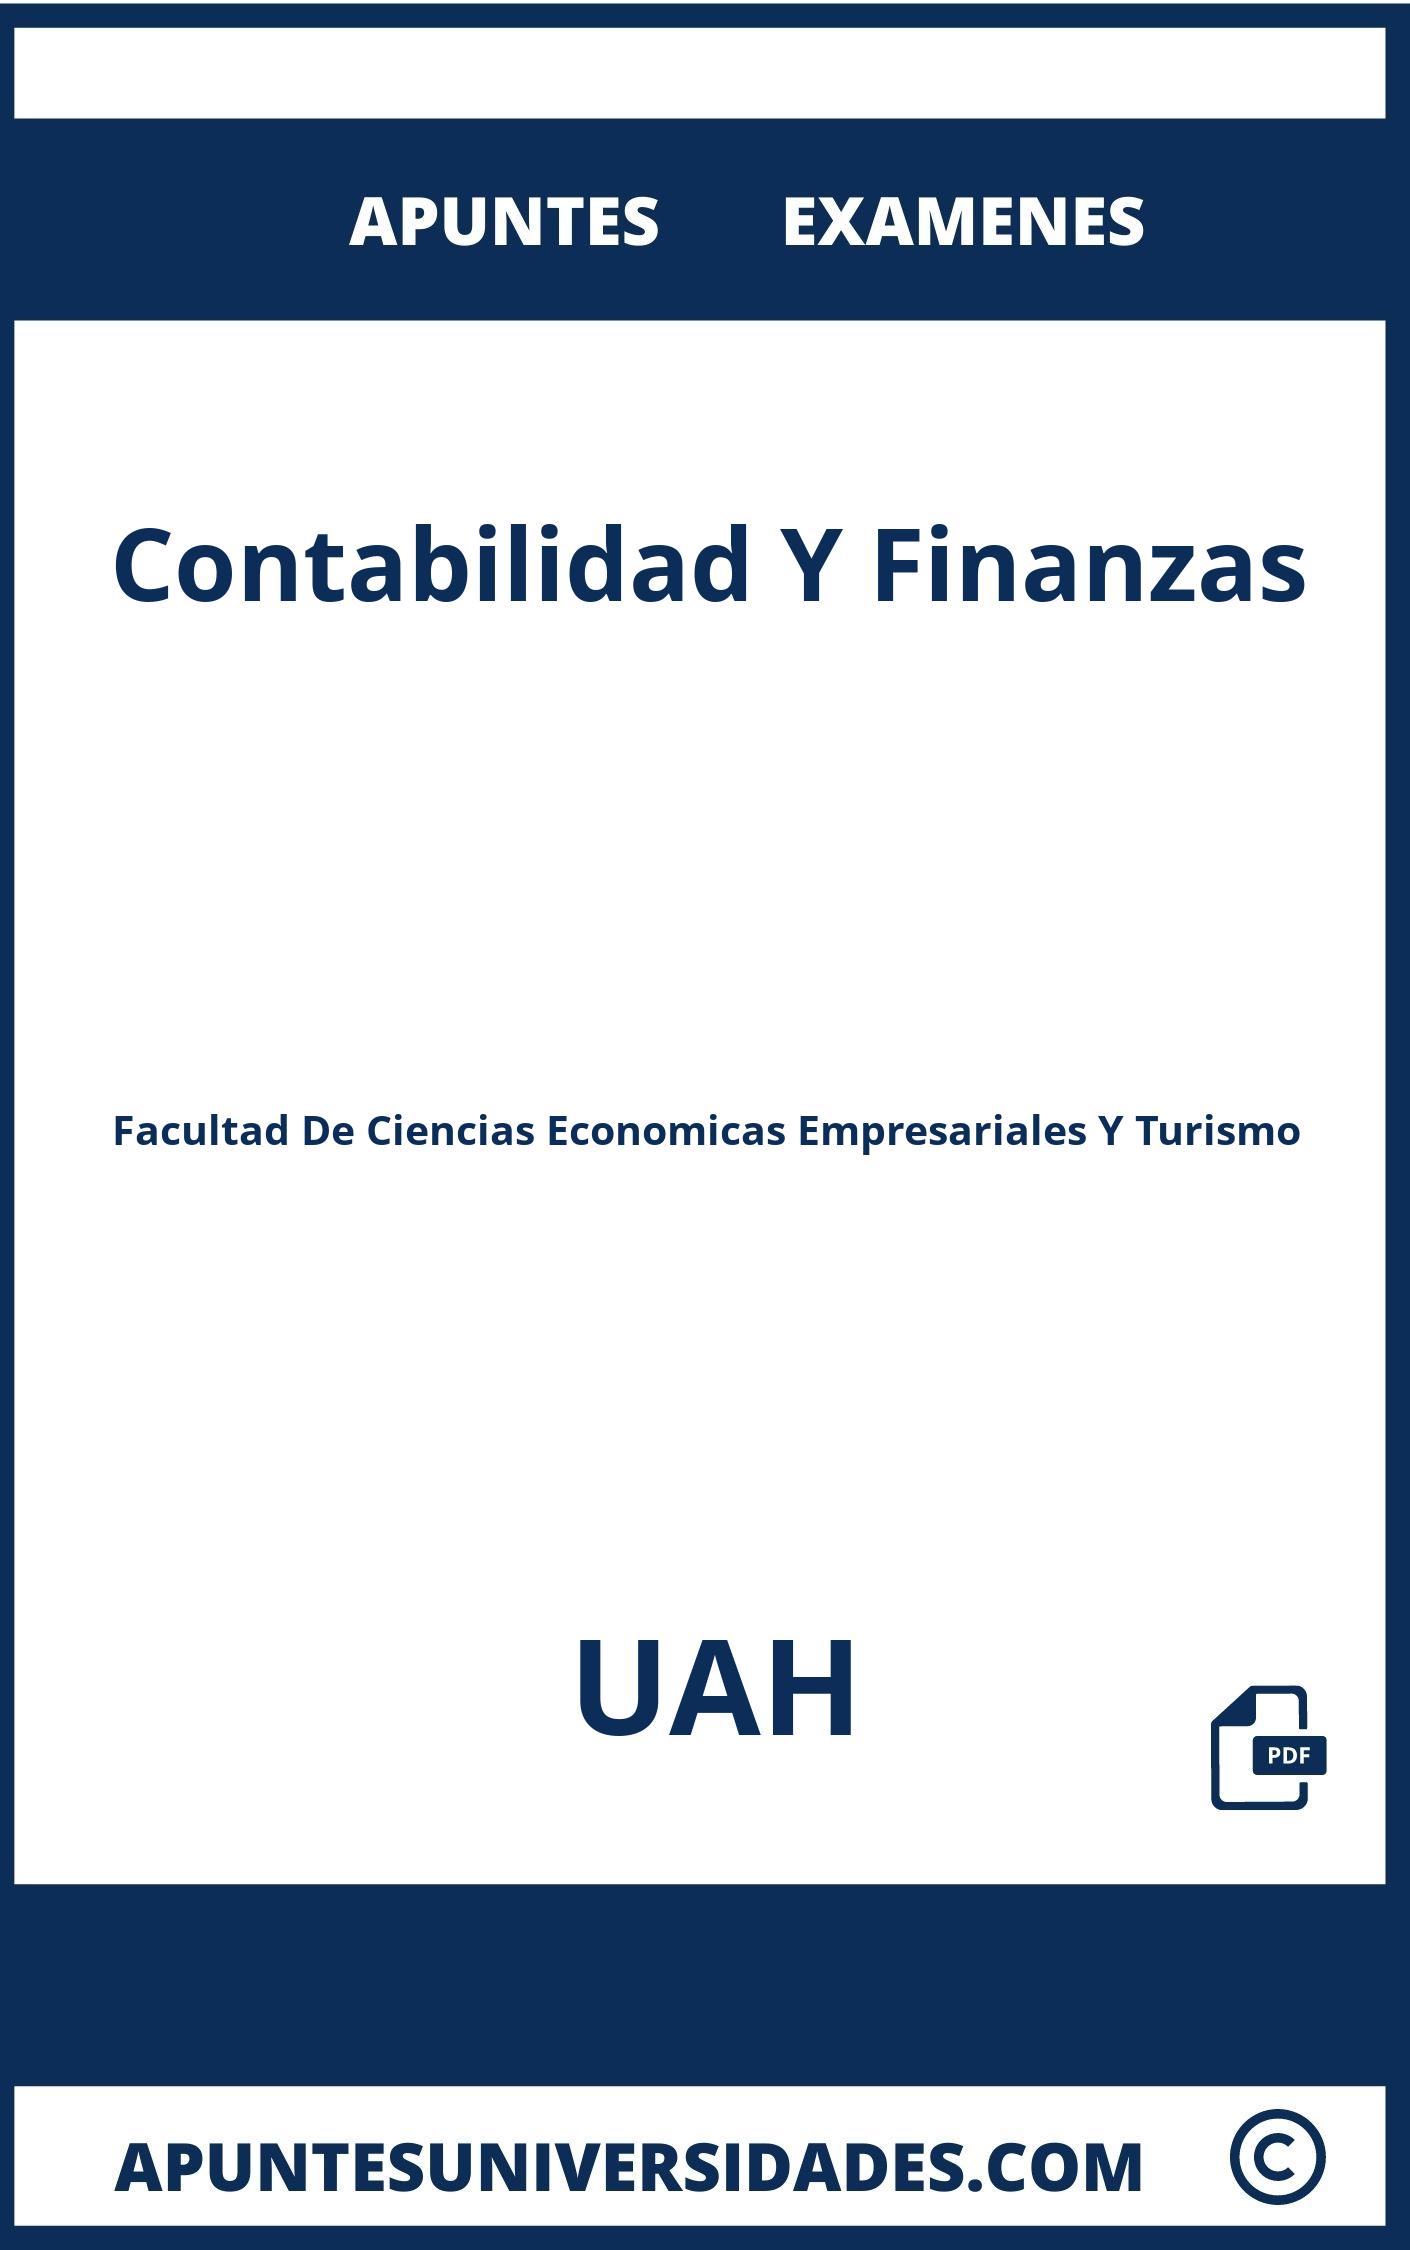 Apuntes y Examenes Contabilidad Y Finanzas UAH